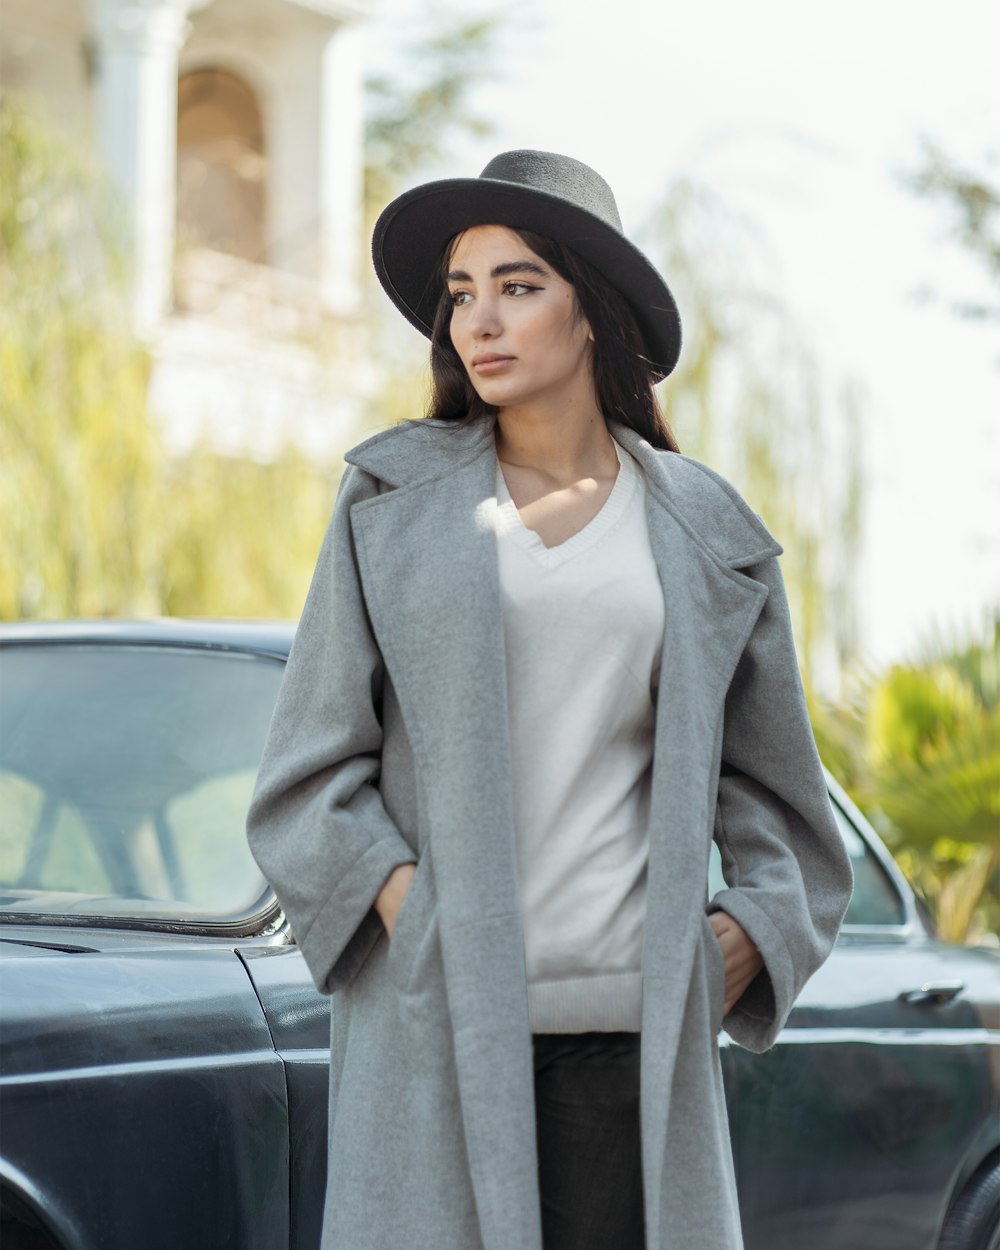 Eine Person in grauem Mantel und Hut steht neben einem Auto